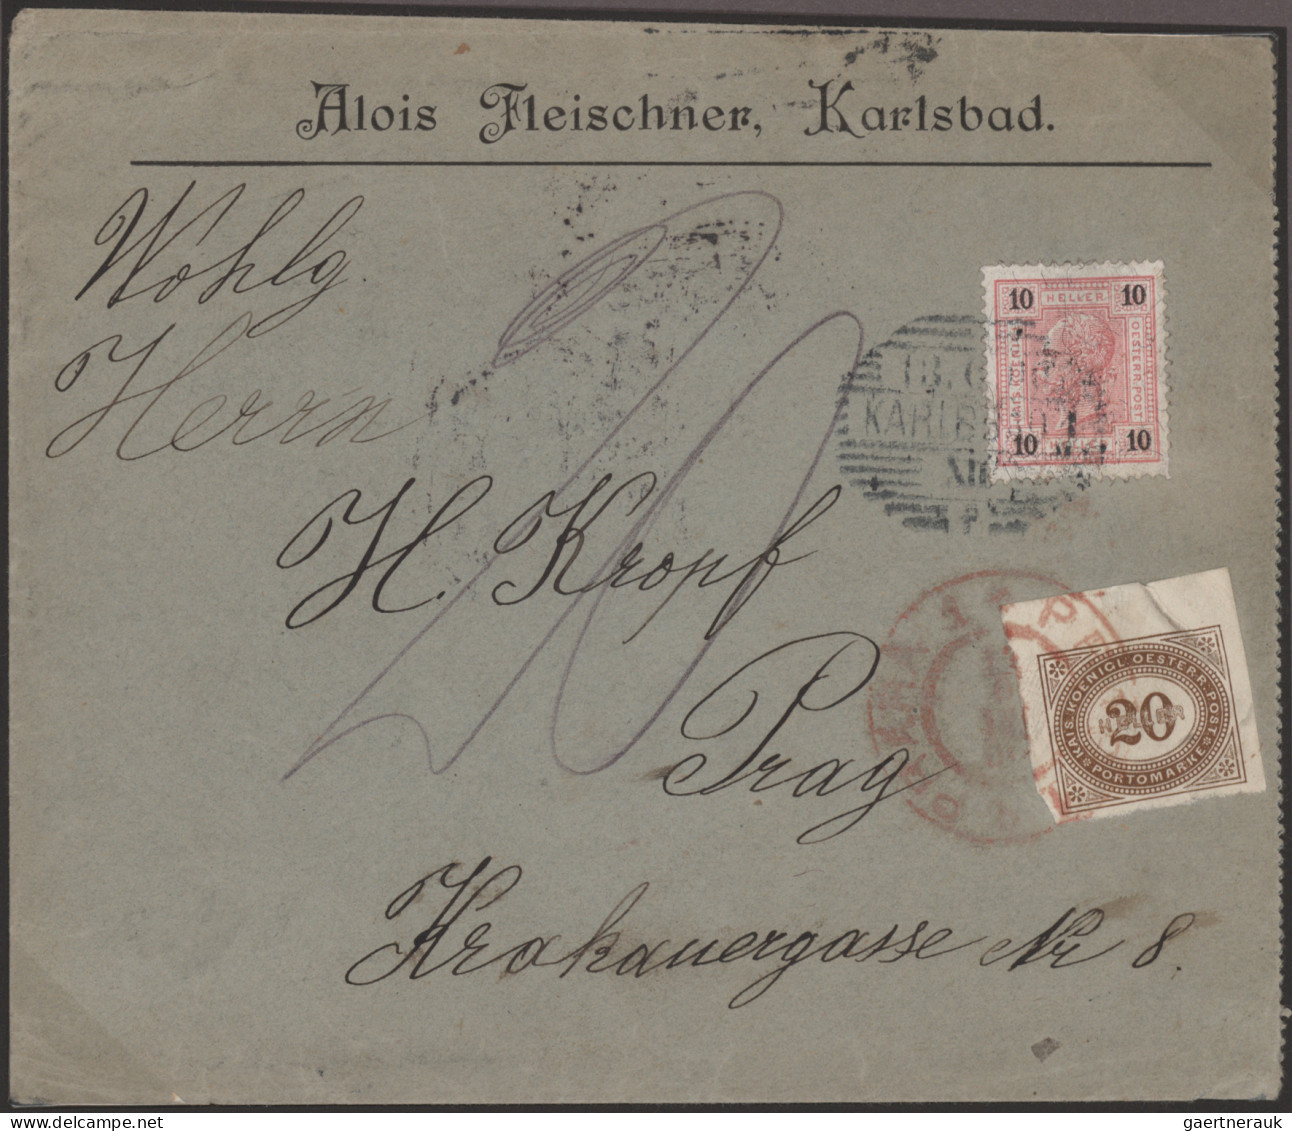 Österreich: 1894/1918, PRAGER POSTAMT 1 in ROT, Spezial-Sammlung von ca. 80 Bele